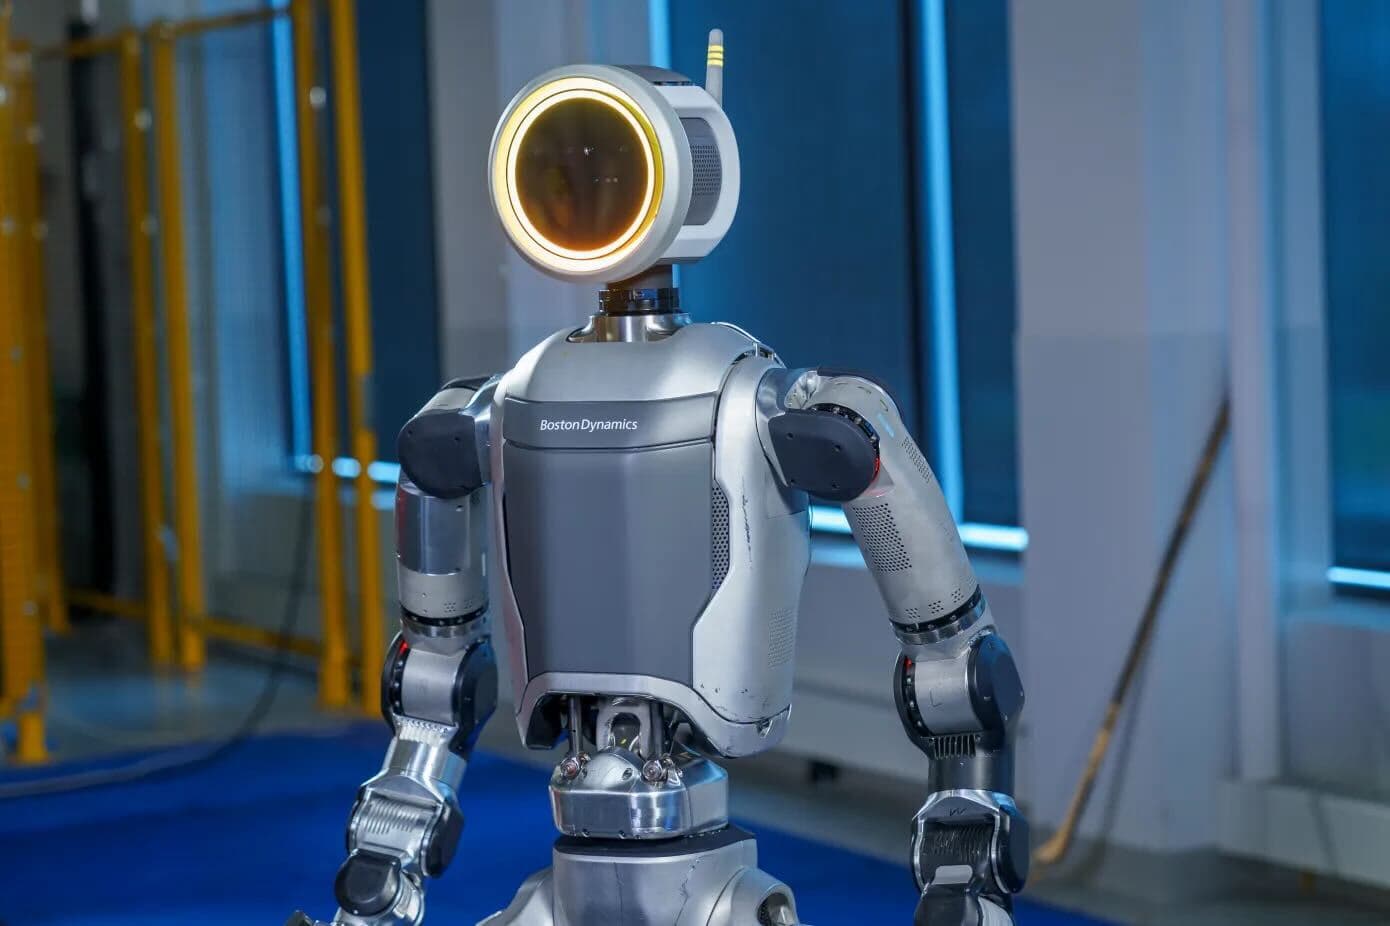 boston dynamics dévoile la nouvelle version de son robot humanoïde atlas